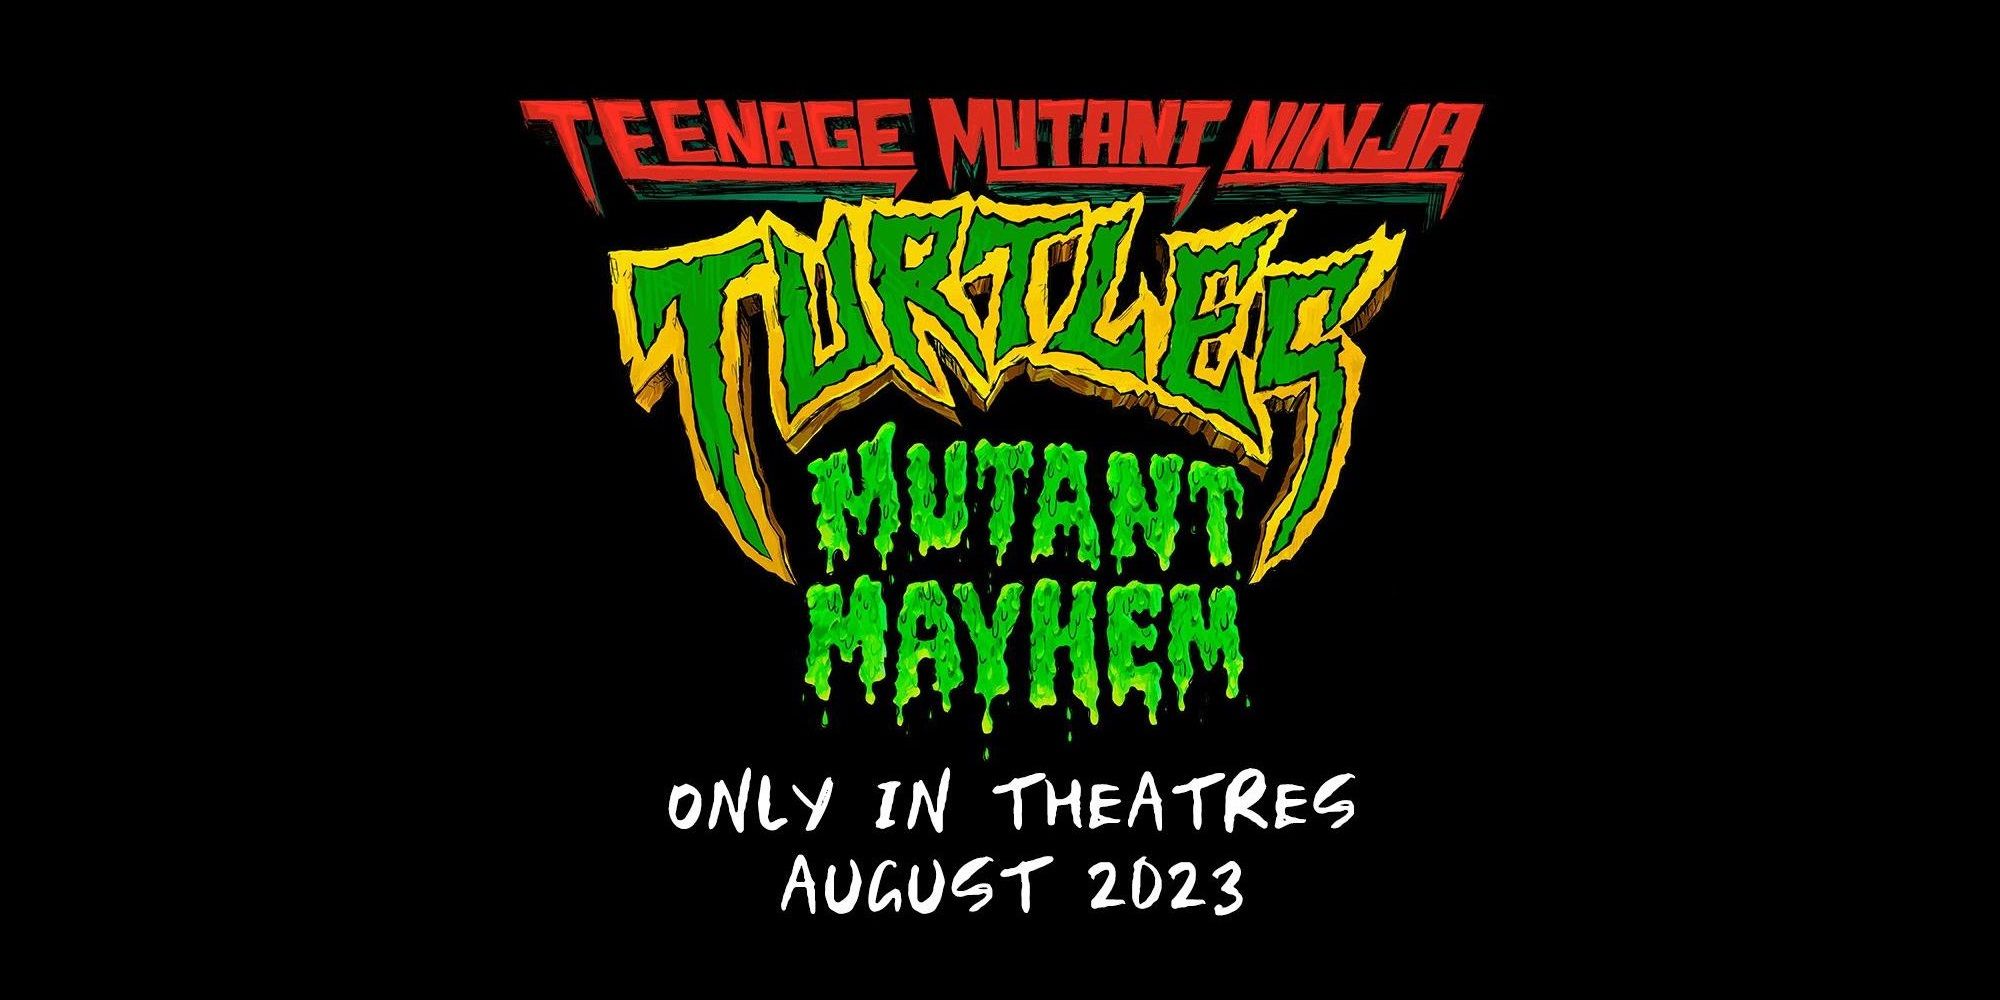 The logo for Teenage Mutant Ninja Turtles Mutant Mayhem